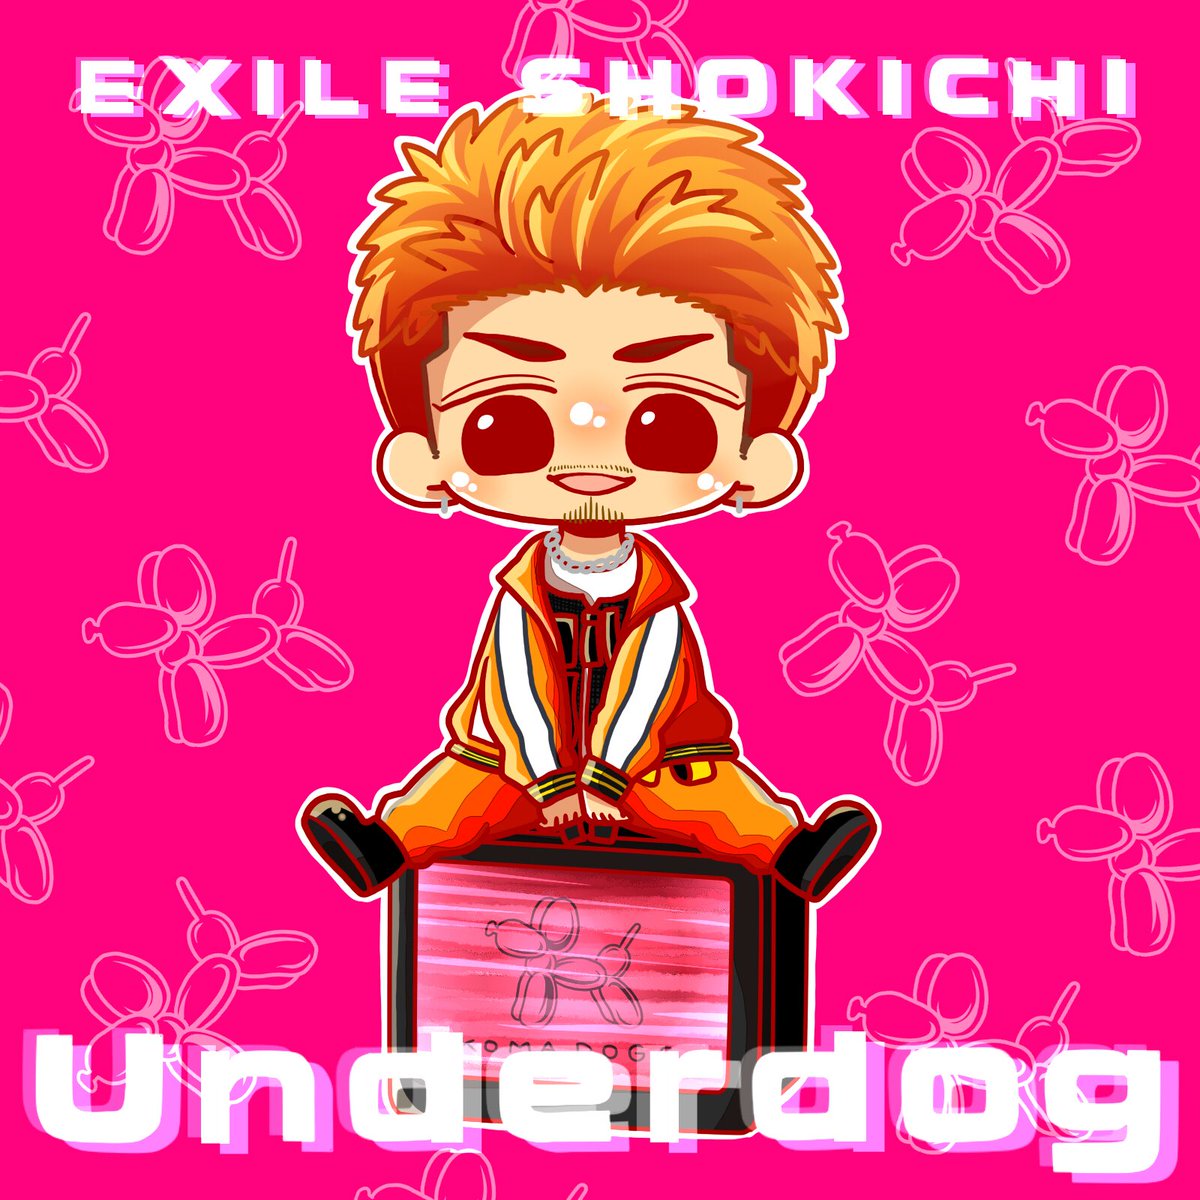 あさり Underdog最高に好きだ Exile Shokichi Underdog Music Video T Co N8evujbqc9 Youtubeさんから